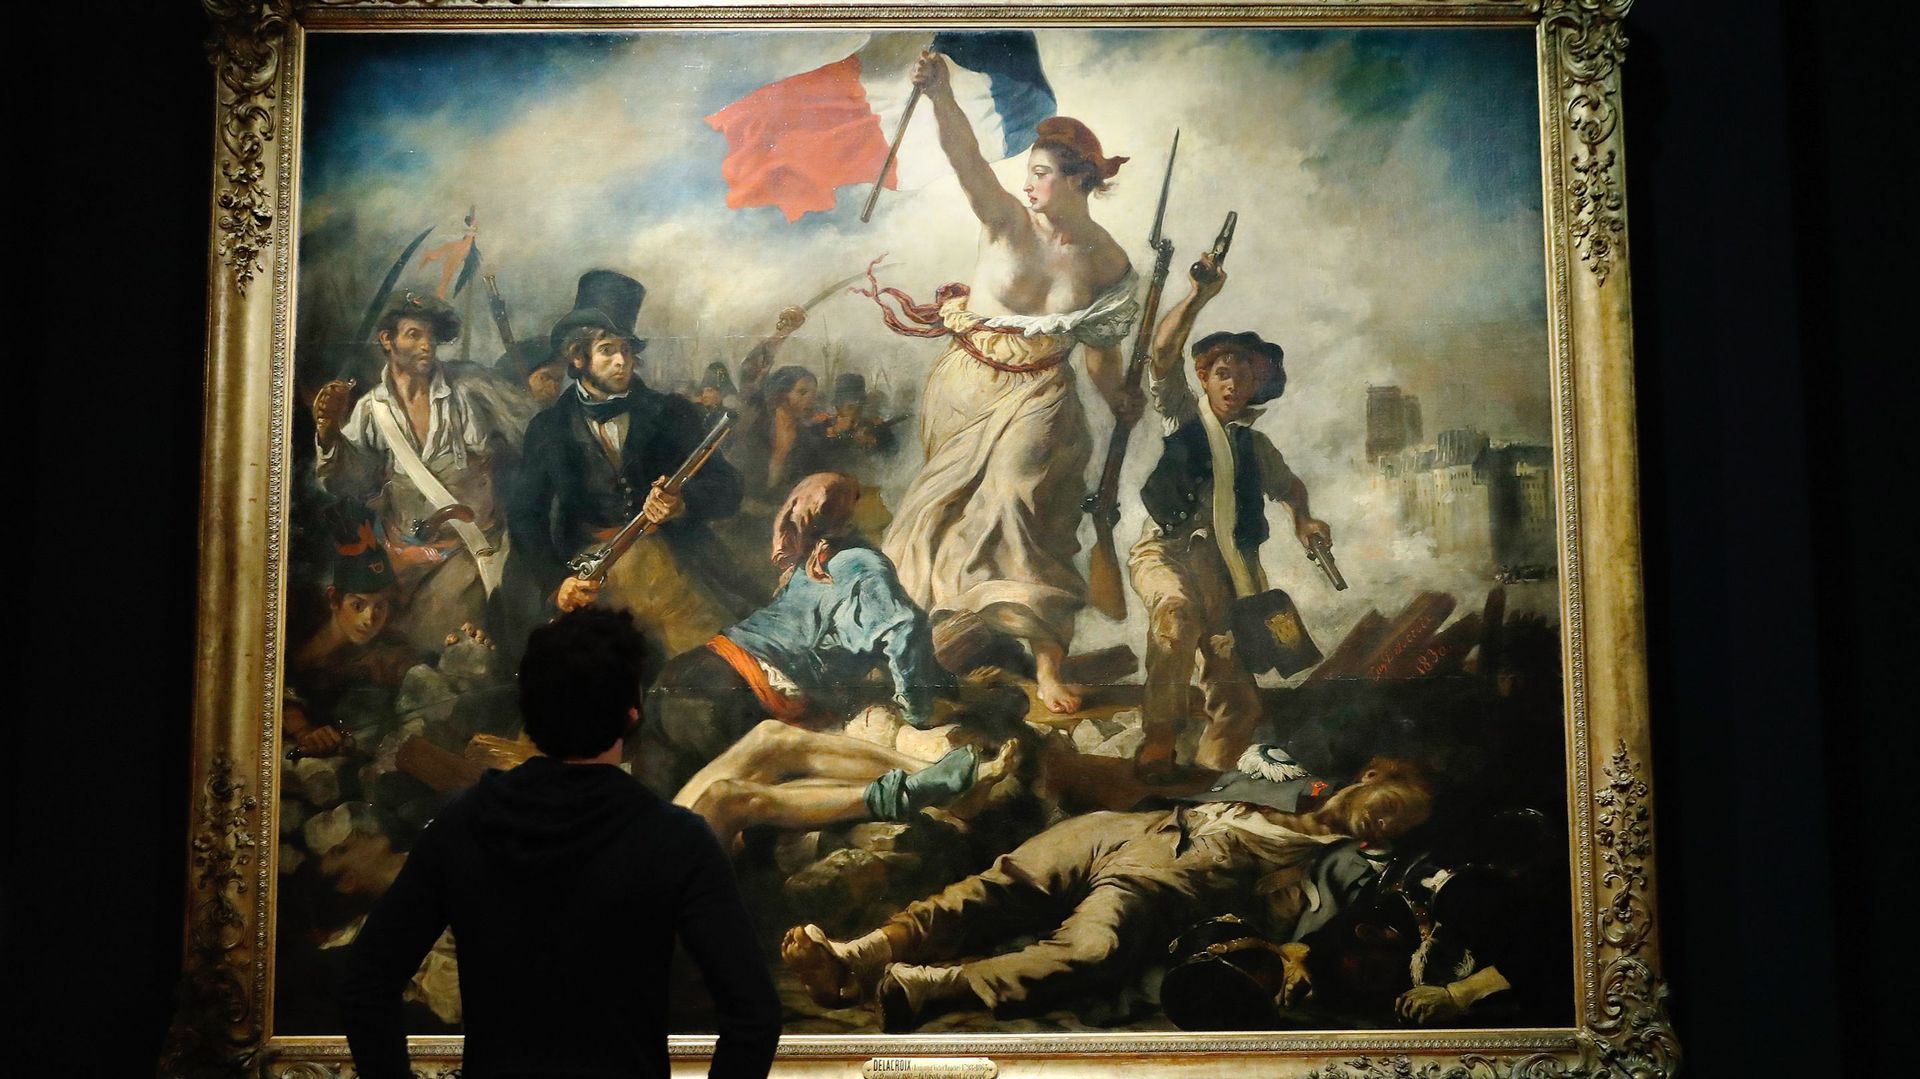 L'exposition consacrée à Delacroix au Louvre est, avec près de 540.000 visiteurs, la plus fréquentée de l'histoire du musée